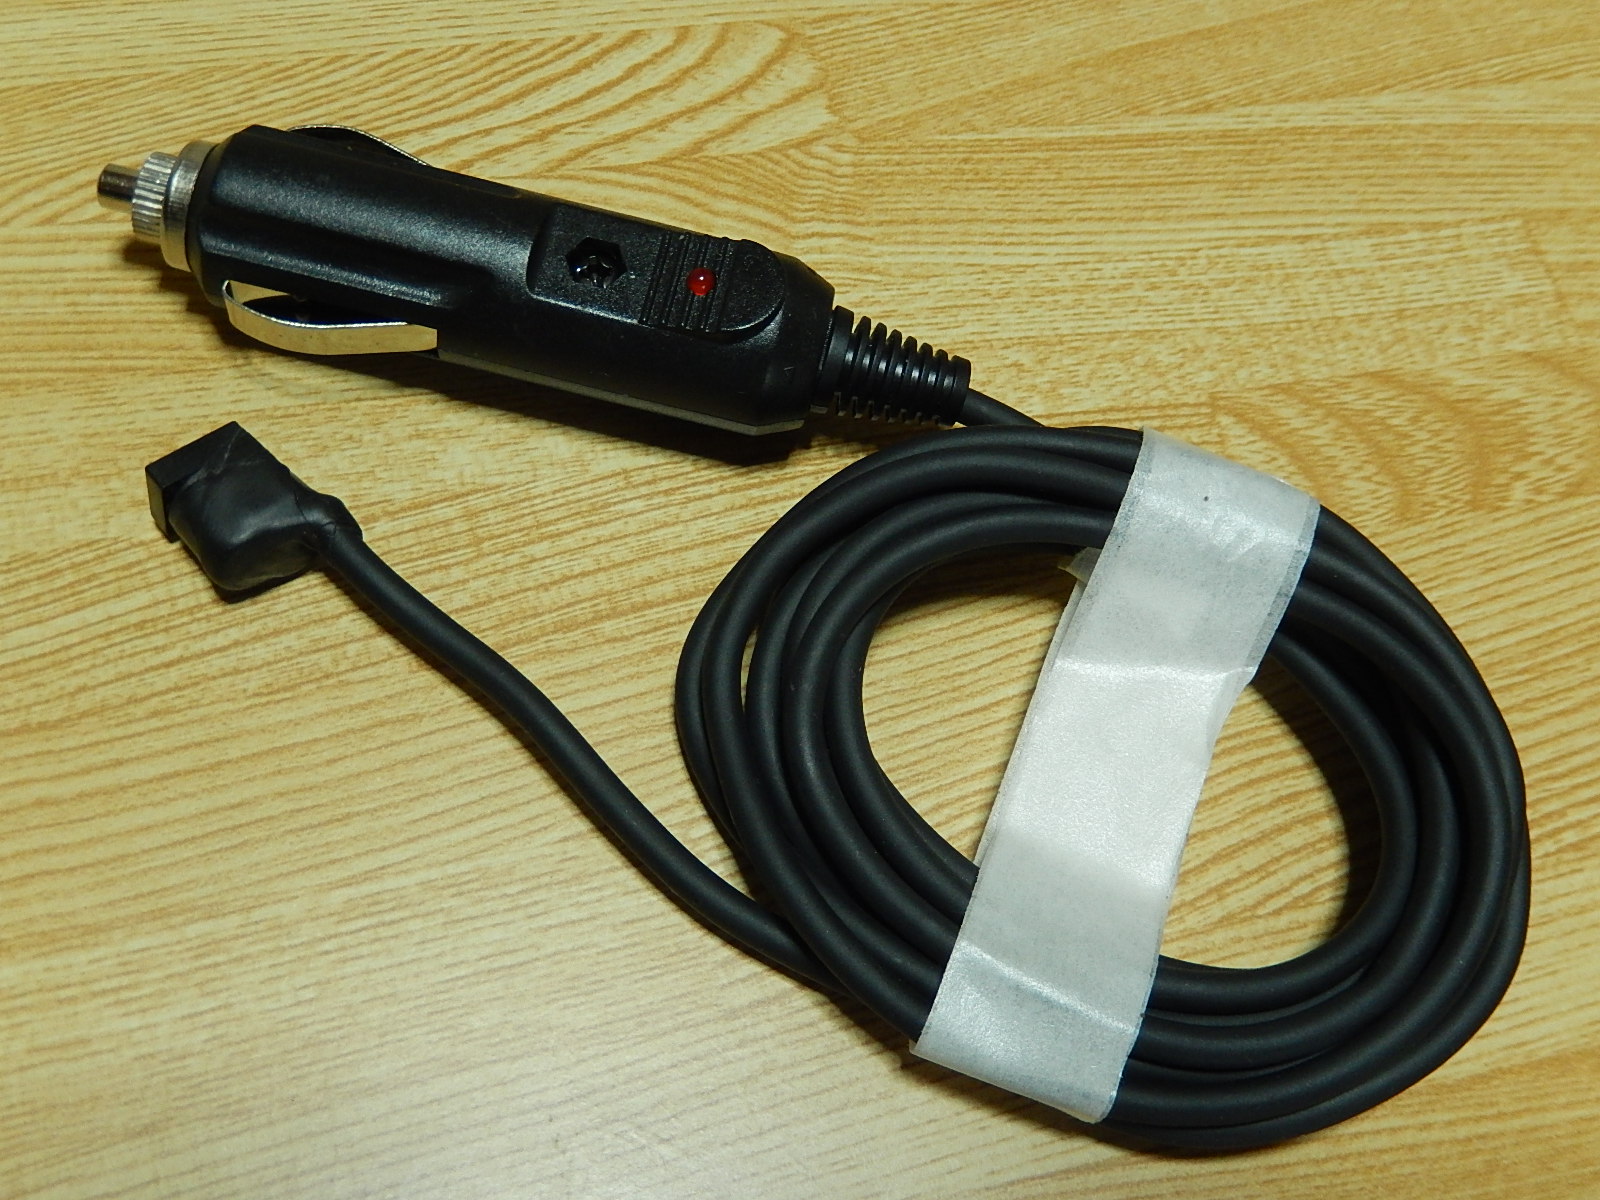 軽自動車 ETC ②型116 シガー電源 or USB